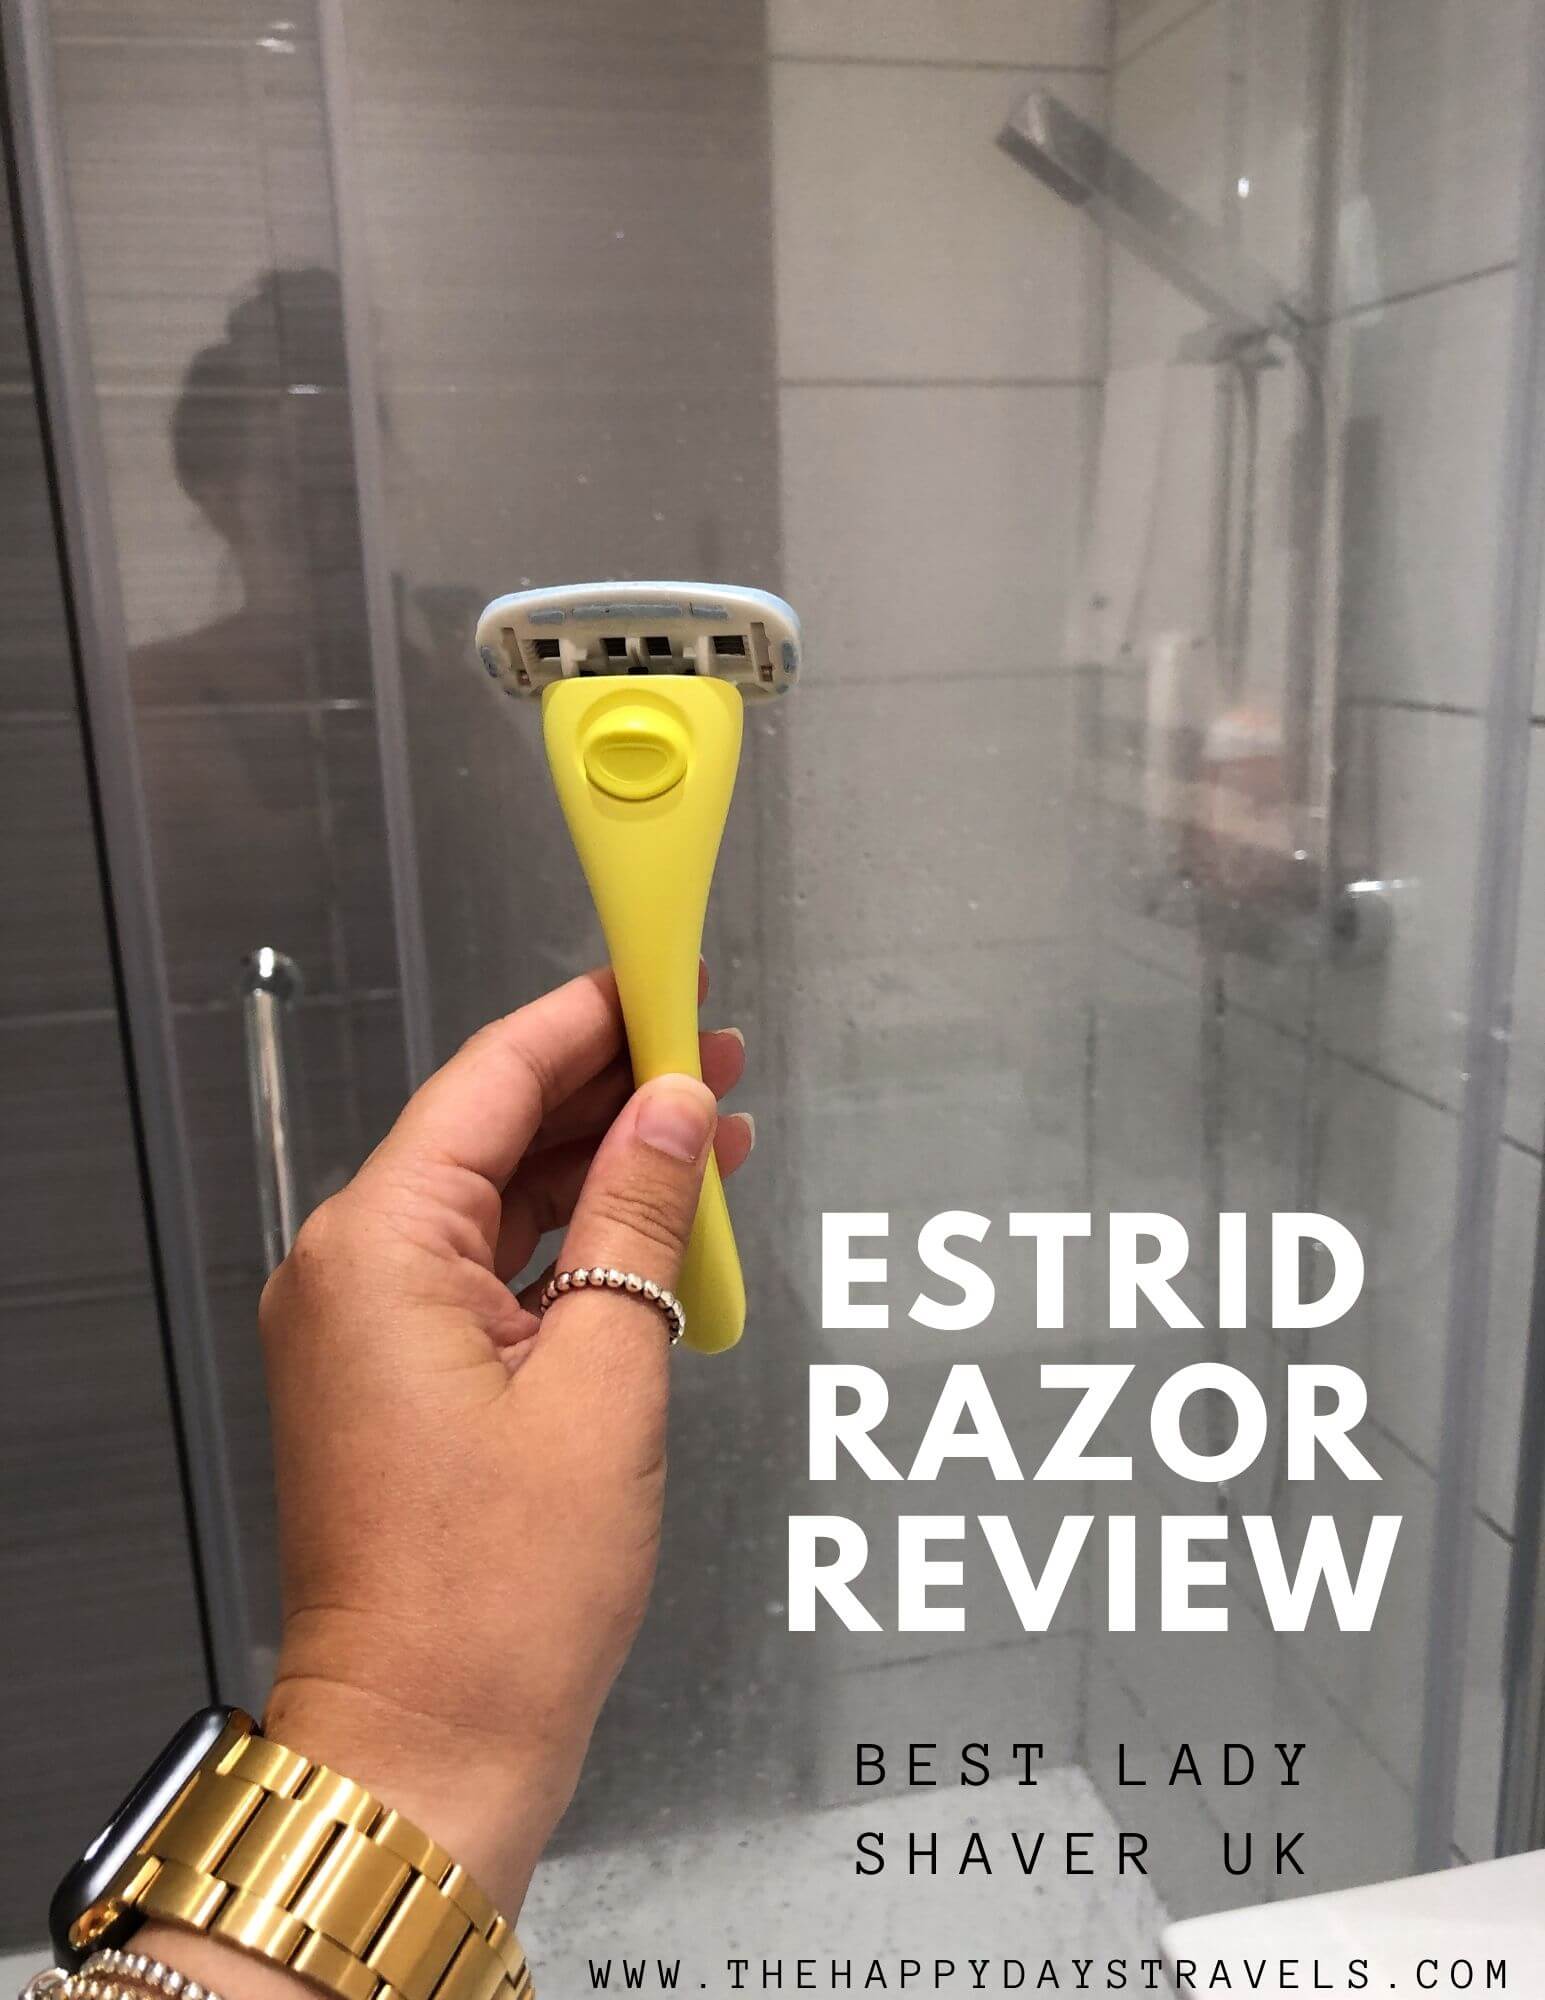 Estrid razor review pin image. Left hand holding lemonade Estrid shaver against shower